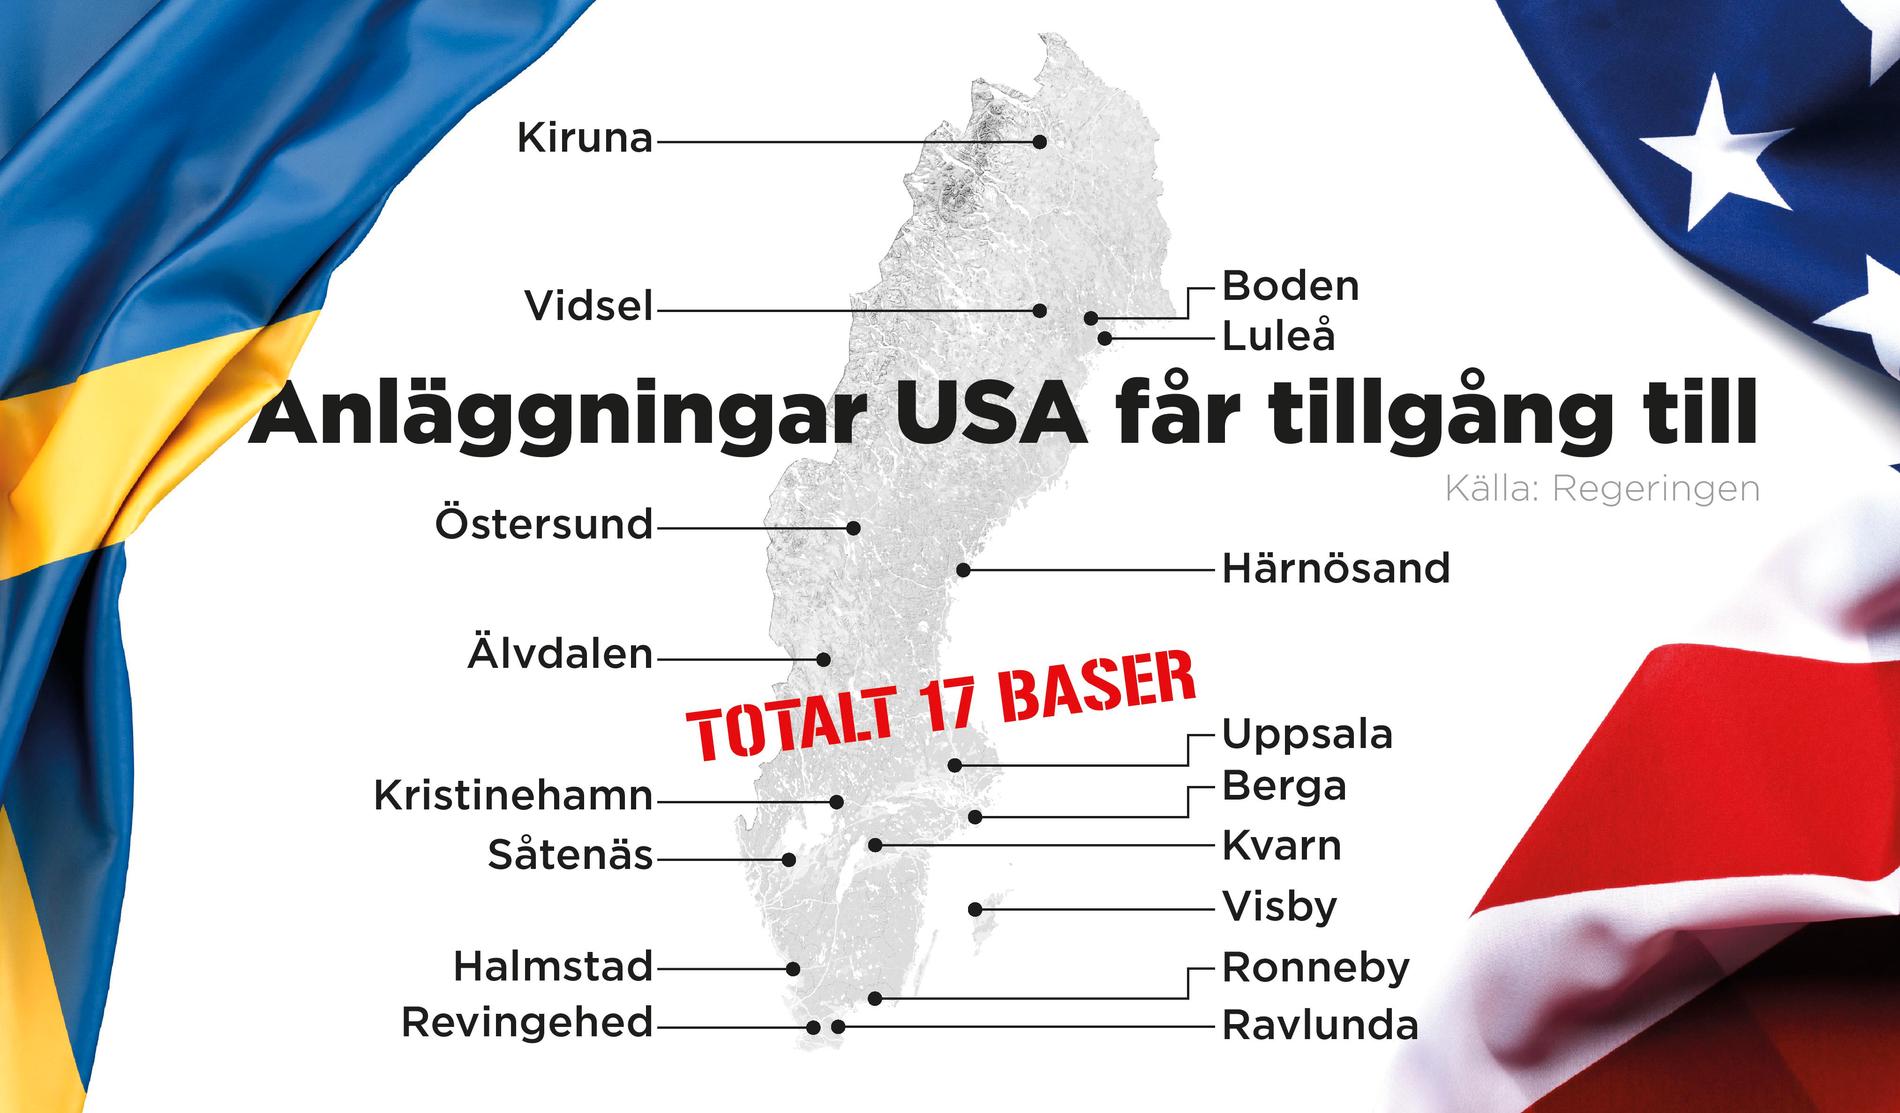 USA får tillträde till 17 baser i Sverige.